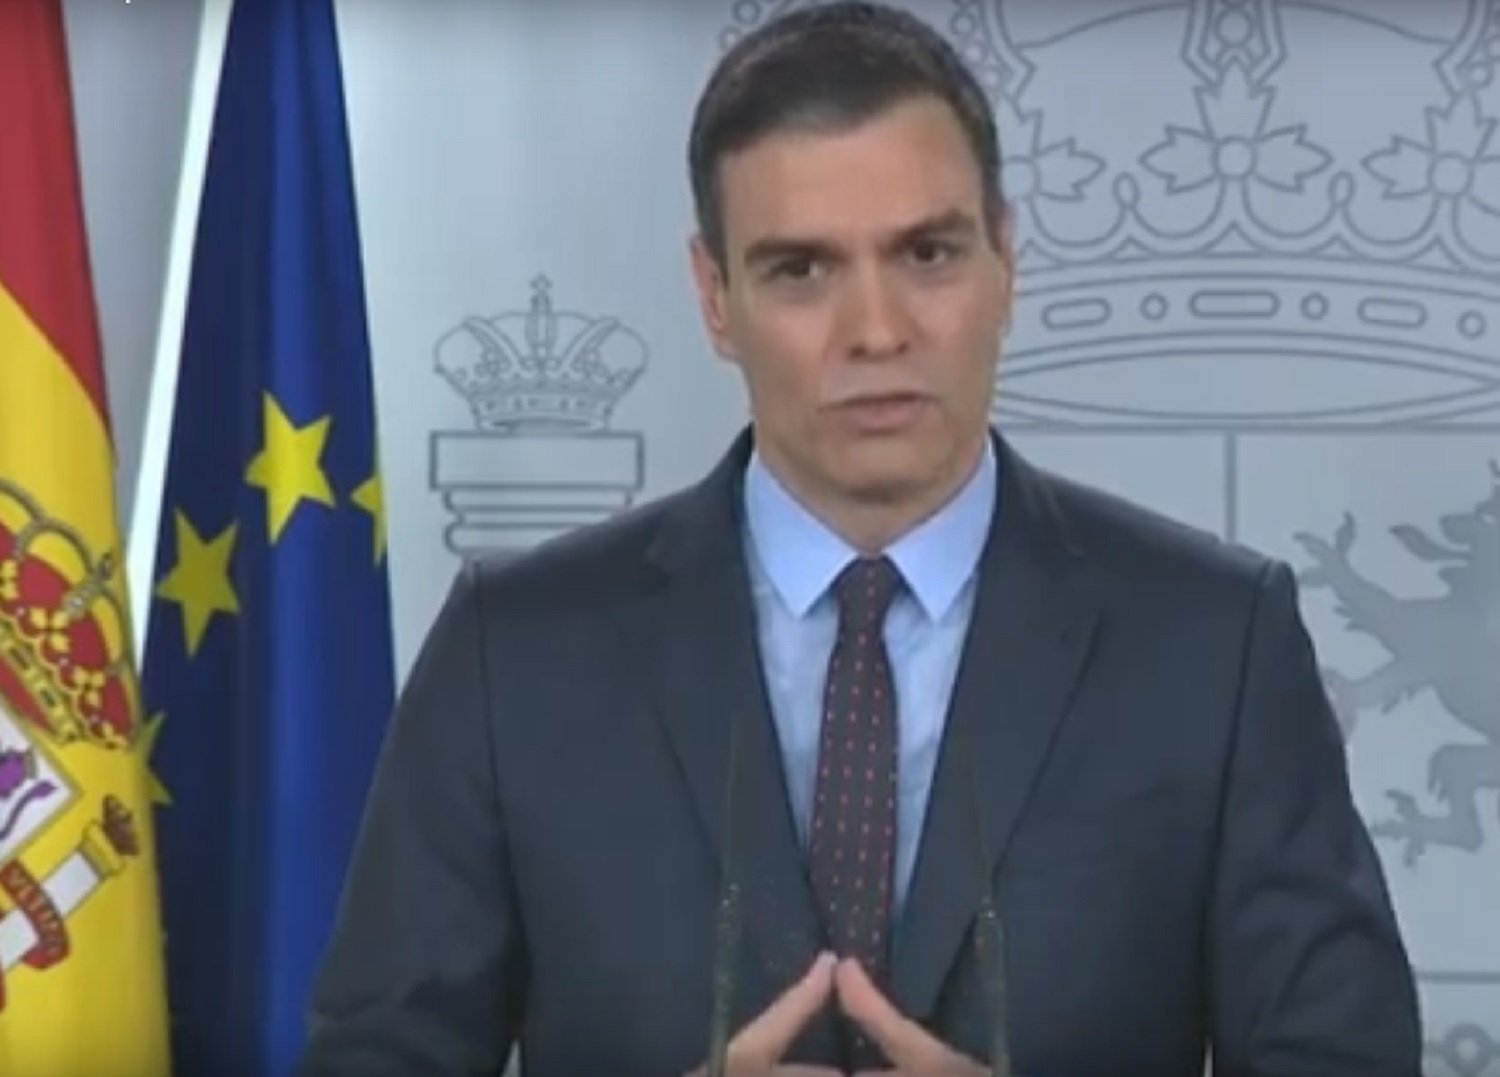 CORONAVIRUS| Sánchez: "Nadie de mi gobierno polemizará con ningún otro político"